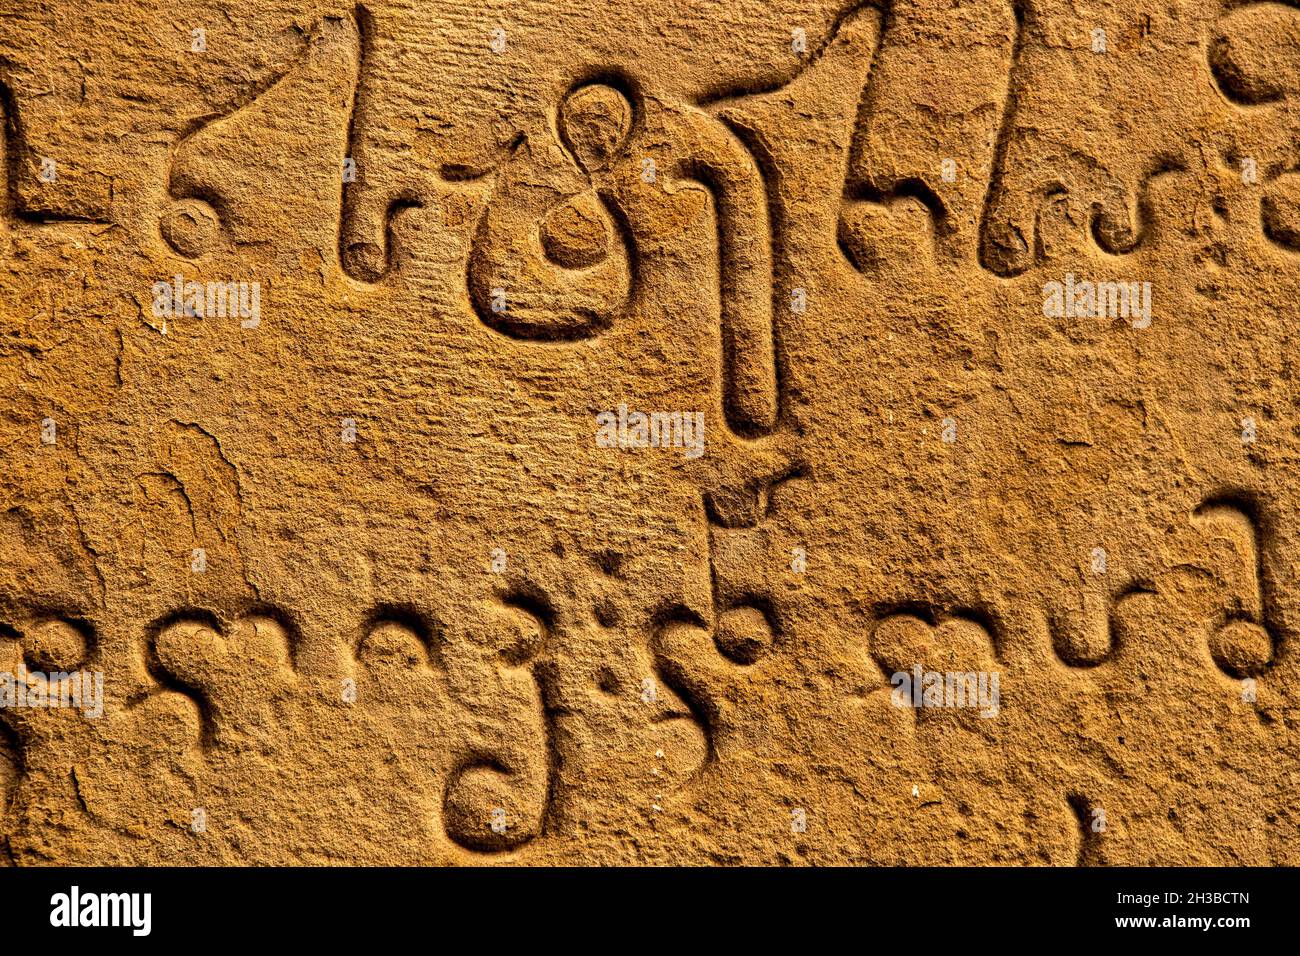 Primo piano l'antica scultura dell'alfabeto Mkhedruli si sviluppò tra l'XI e il XIII secolo - lingua ufficiale della Georgia - su arenaria sgranata antica Foto Stock